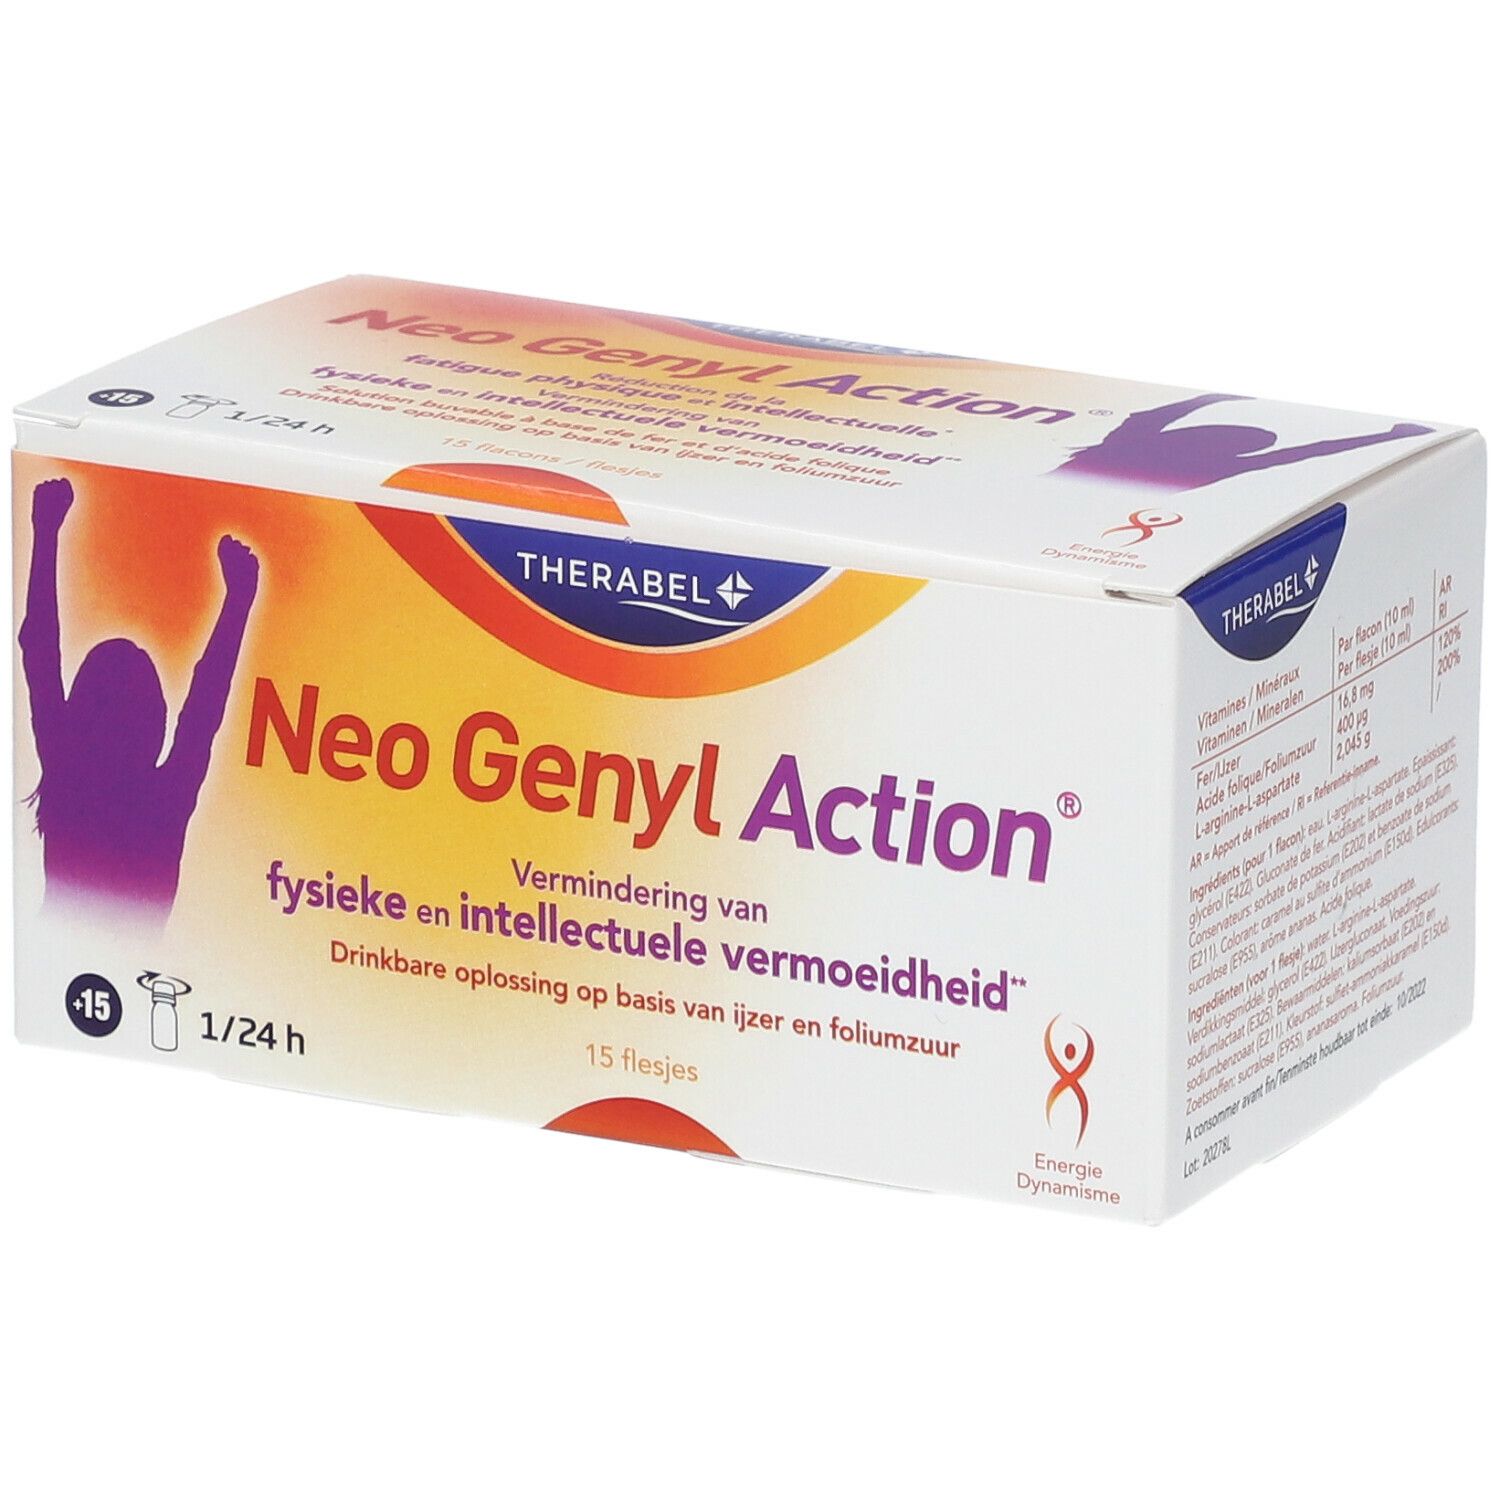 Neo Genyl Action